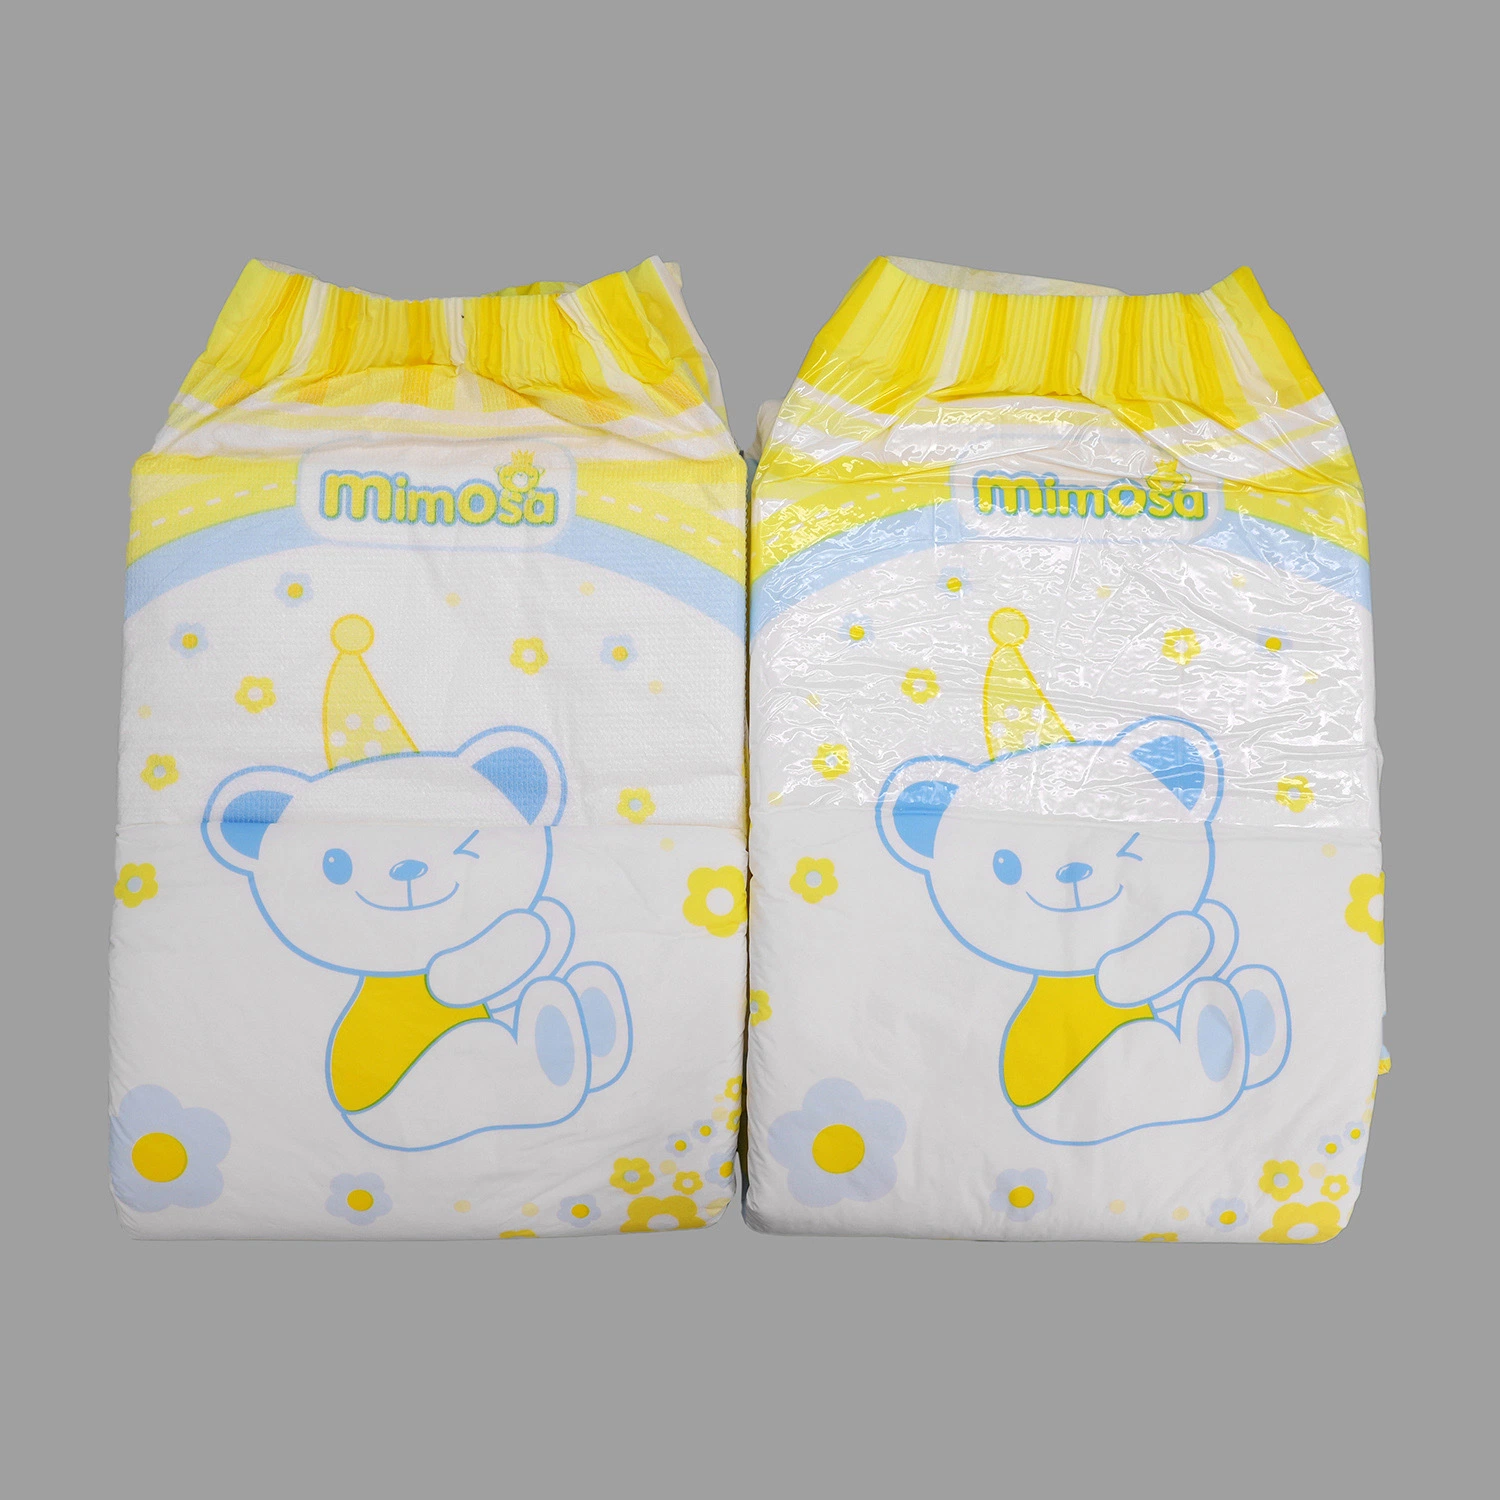 Запник пластмасса одноразовый Adult Pull Diaper Up, Free Adult Diapers Брюки сделанные в Китае Горячие продукты